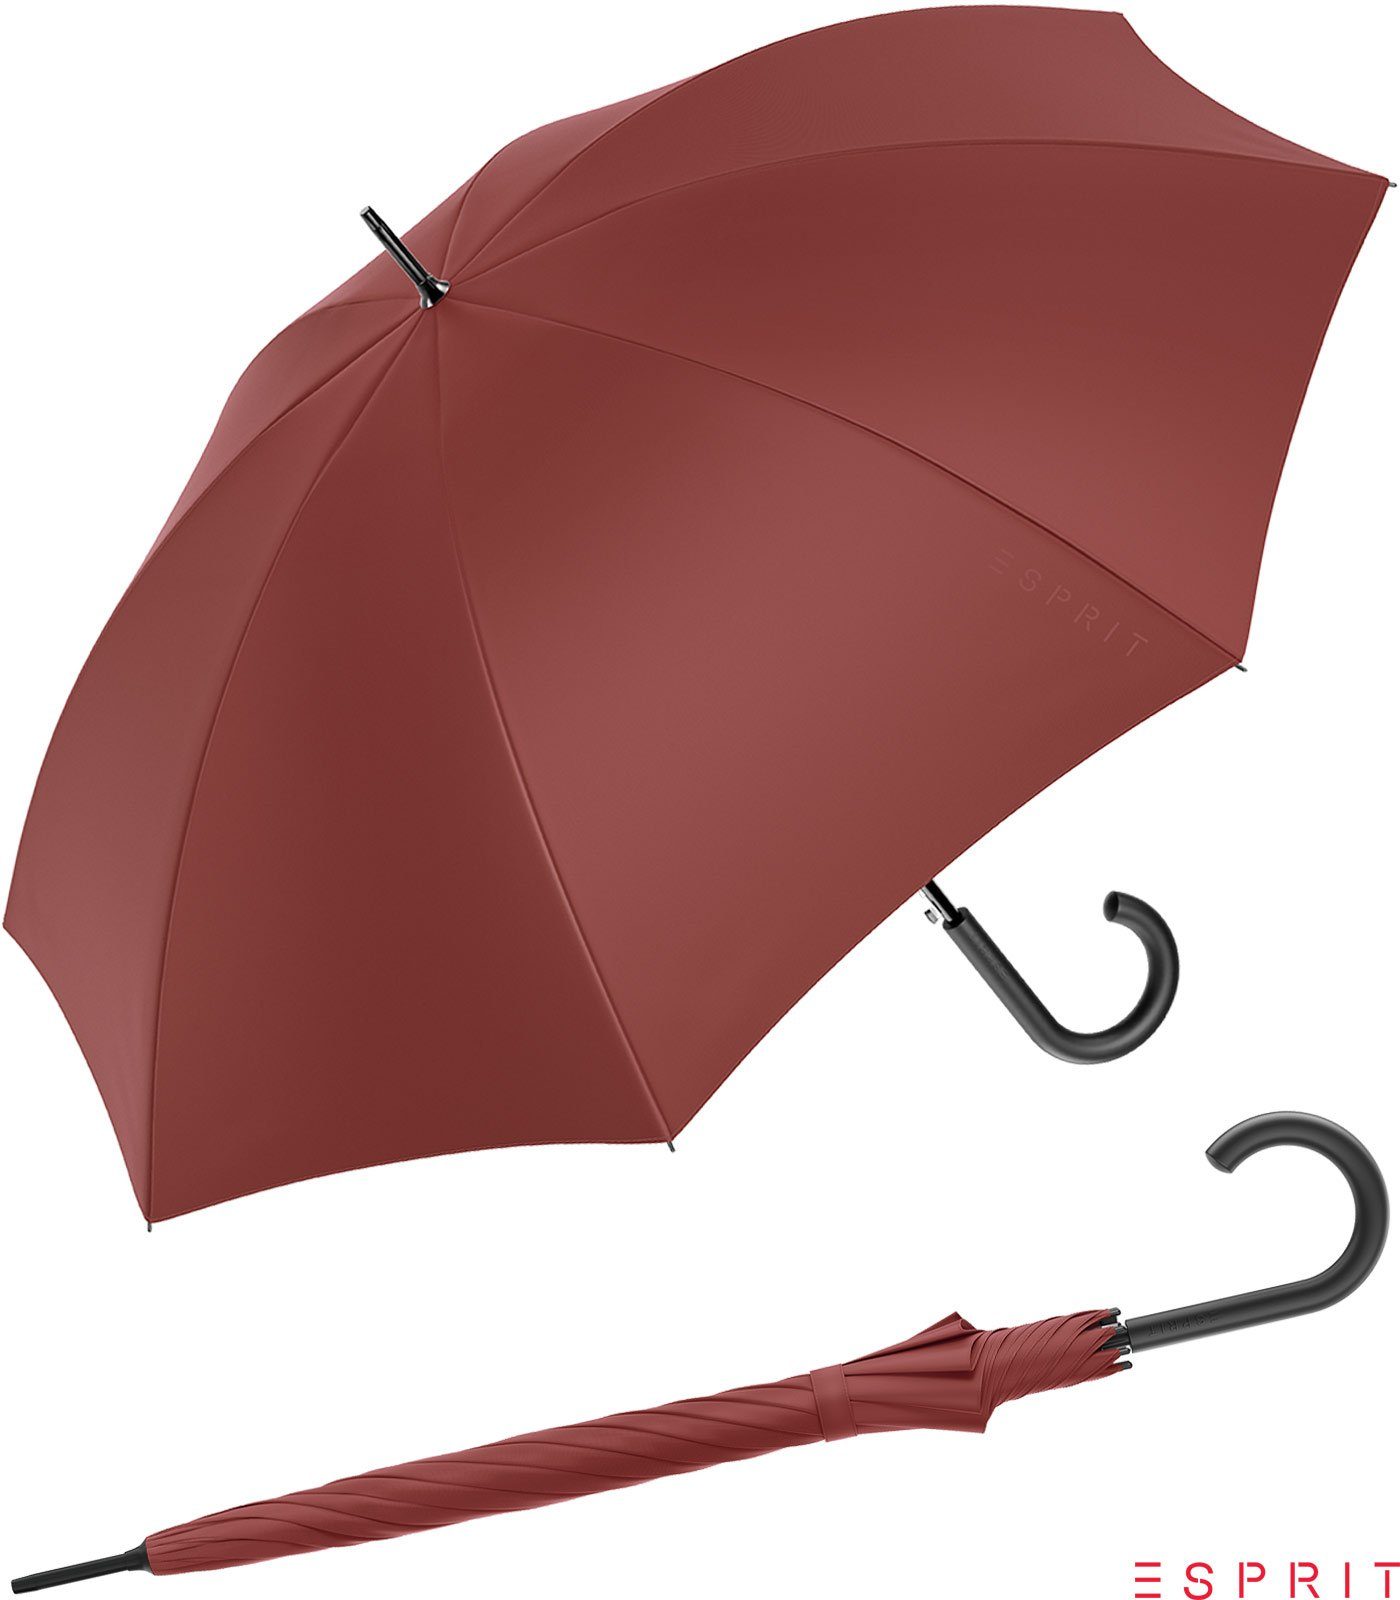 Esprit Langregenschirm Damen mit Auf-Automatik HW 2022 - russet brown, groß, stabil, in den Trendfarben